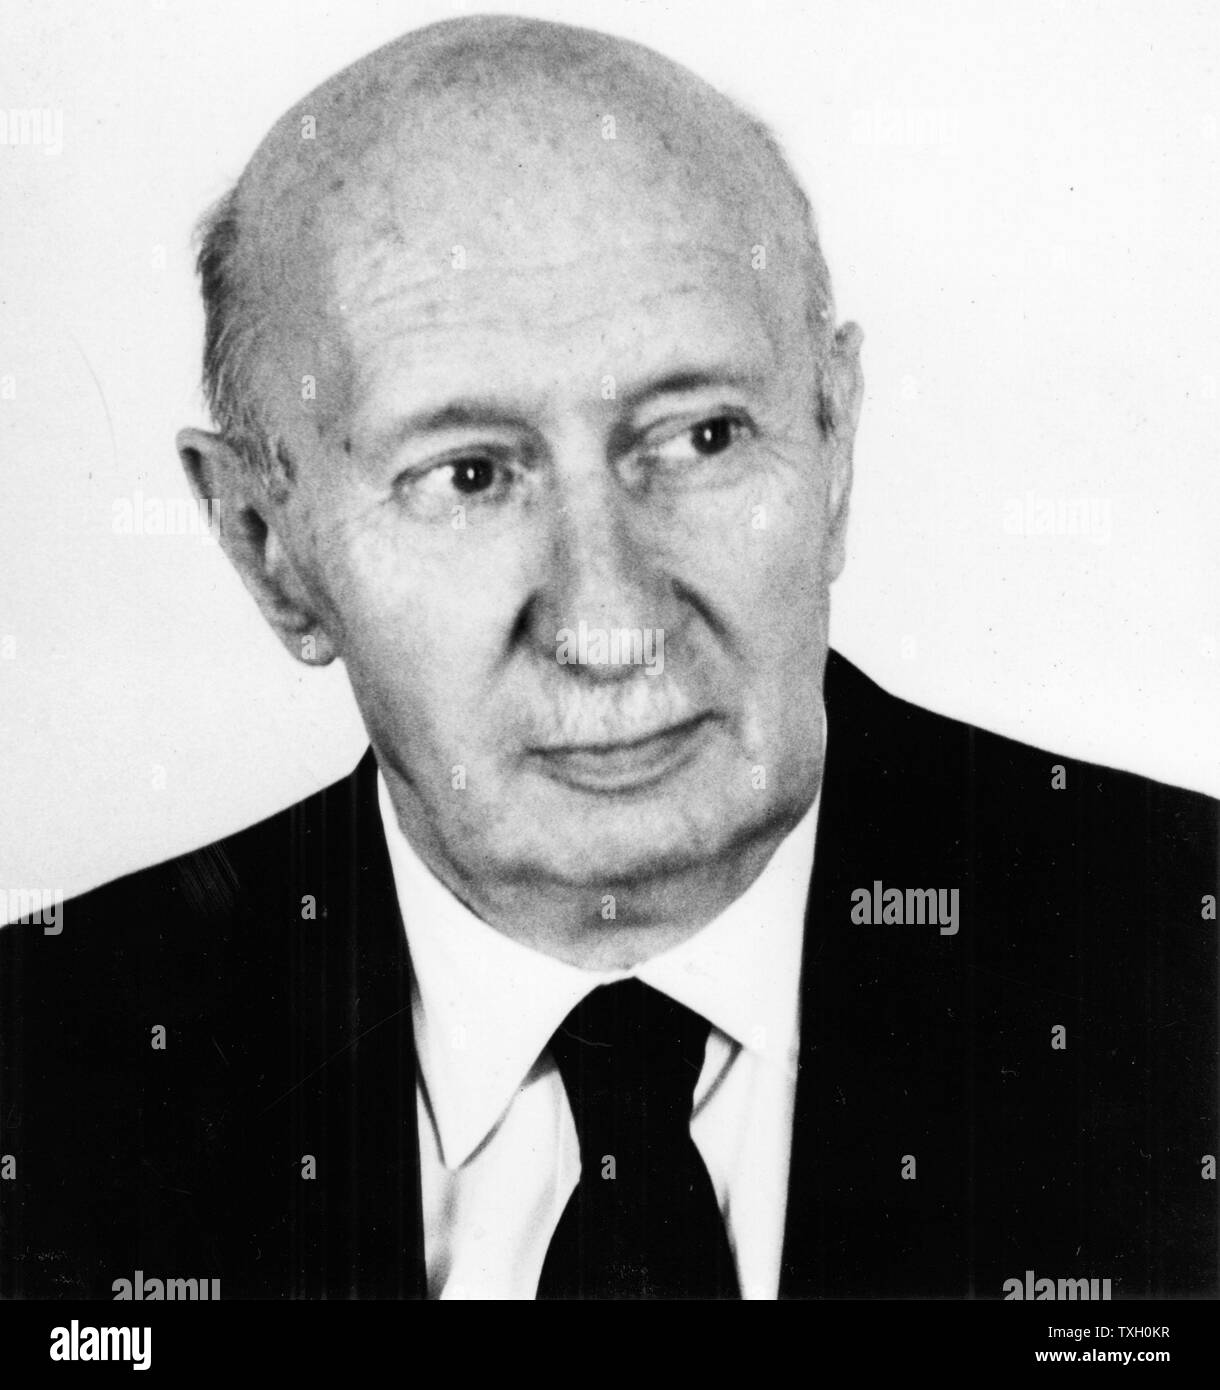 Georg von Bekesy (1899-1972), ungarisch-amerikanischer Physiologe; Nobelpreis für Physiologie oder Medizin 1961; Funktion des Innenohrs. Foto Stockfoto